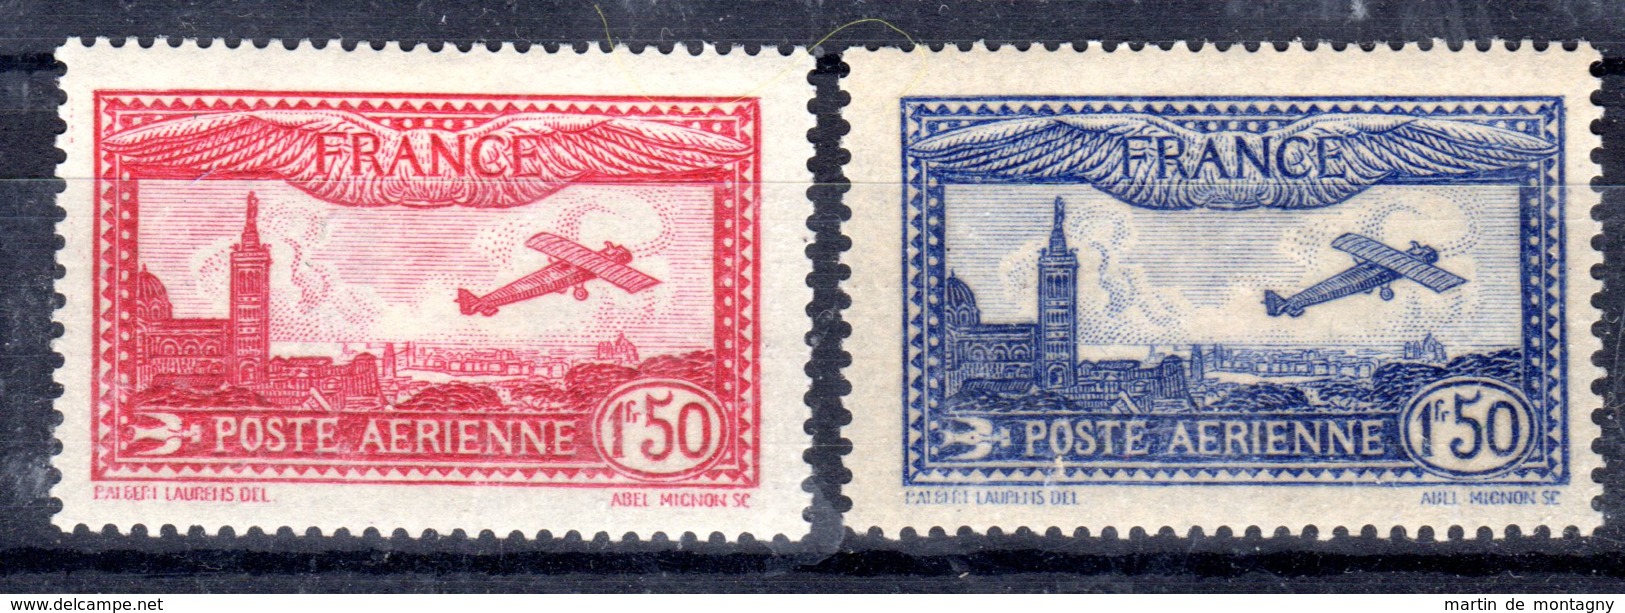 8.6.1930 Und 11.11.1930; Flugpostmarken; Mi-Nr. 251 + 255, Ungebraucht *, Los 50915 - 1927-1959 Nuovi